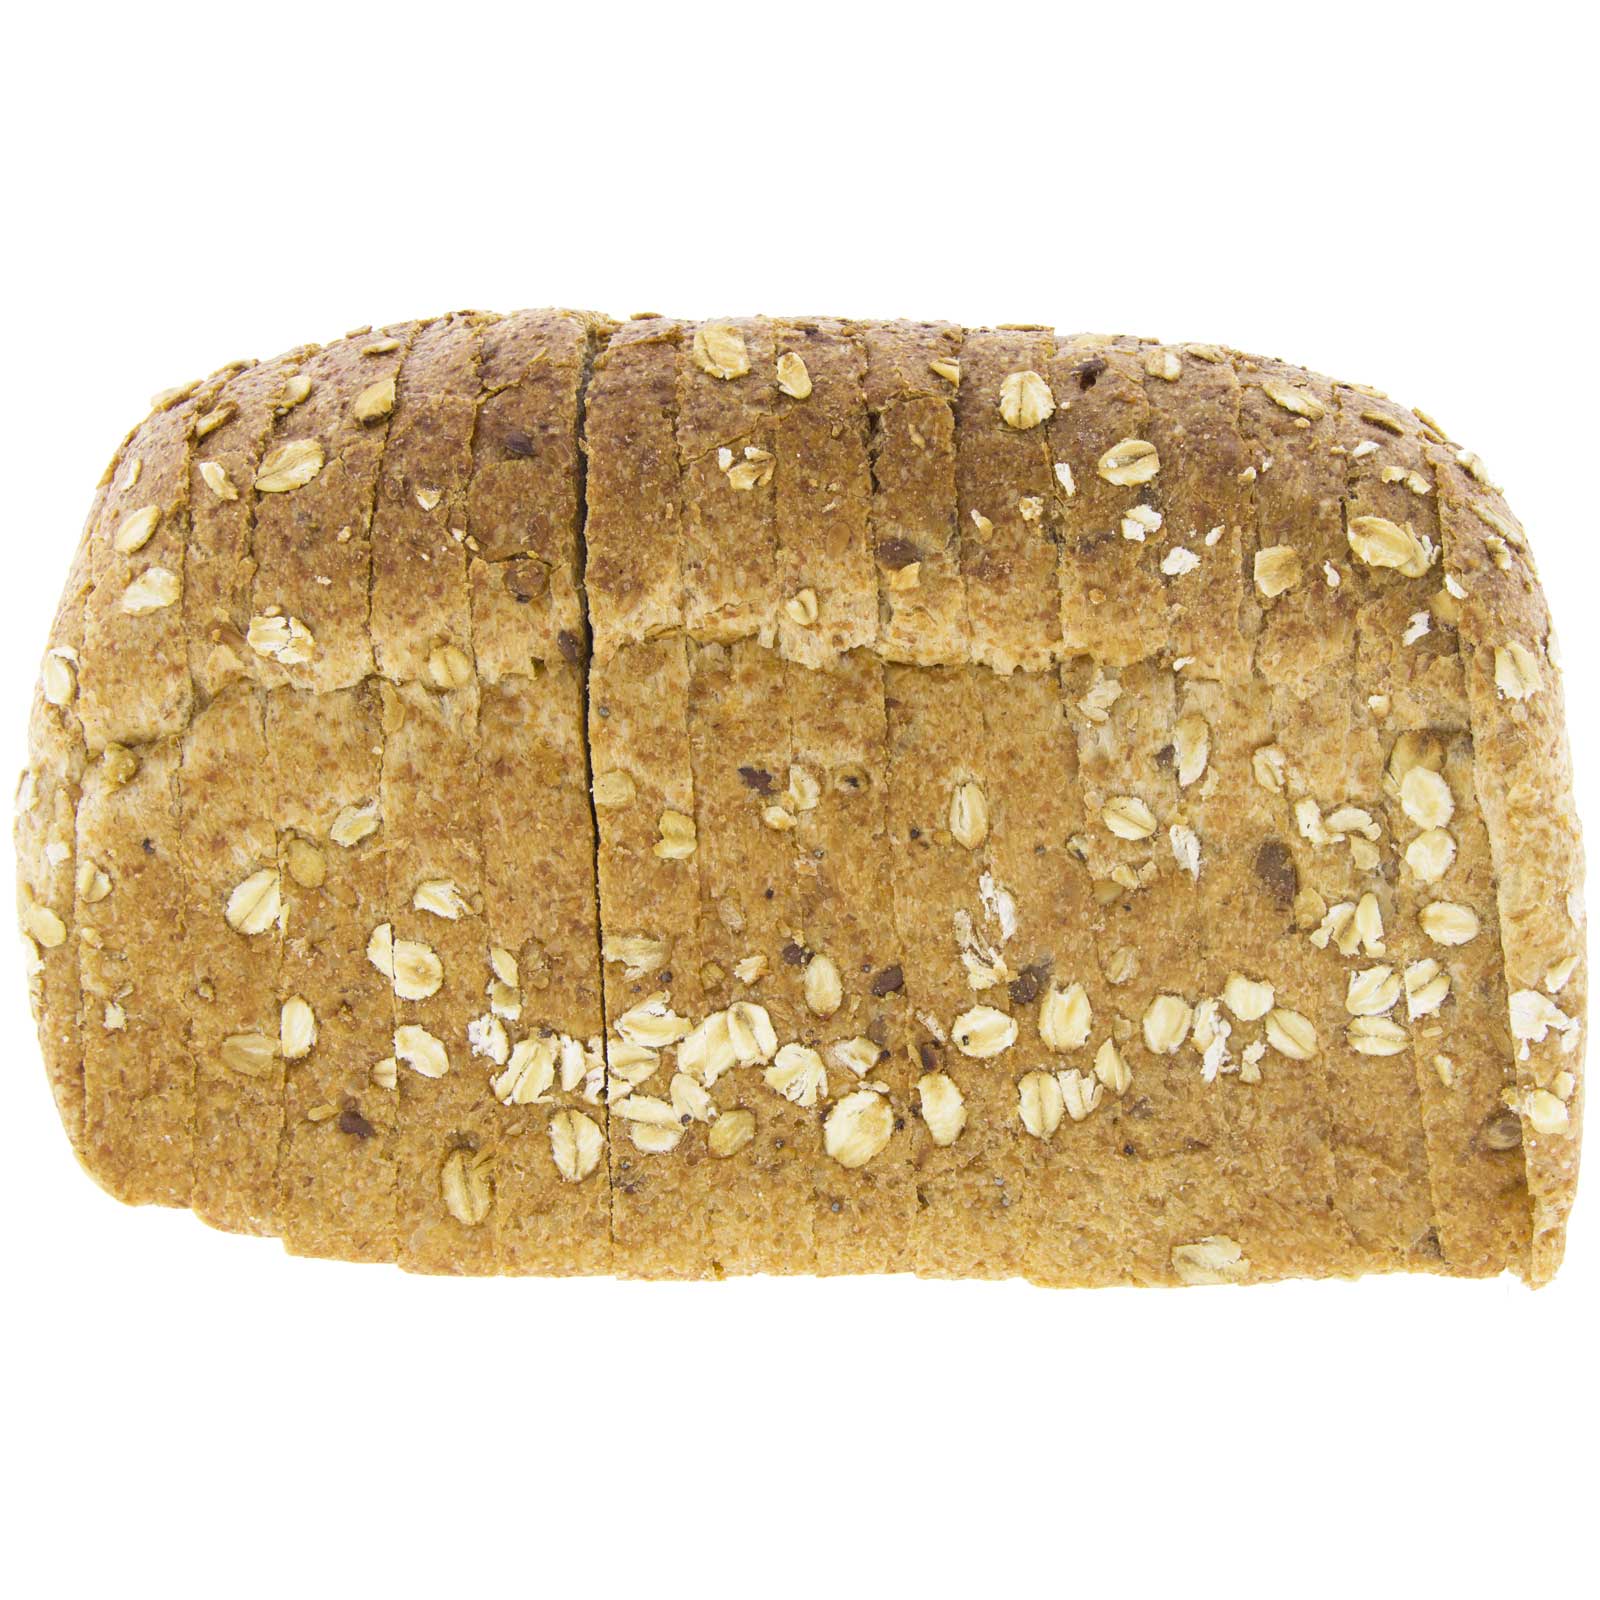 Pan de Molde de Espelta Integral con Cereales 450g Ecológico Artesano